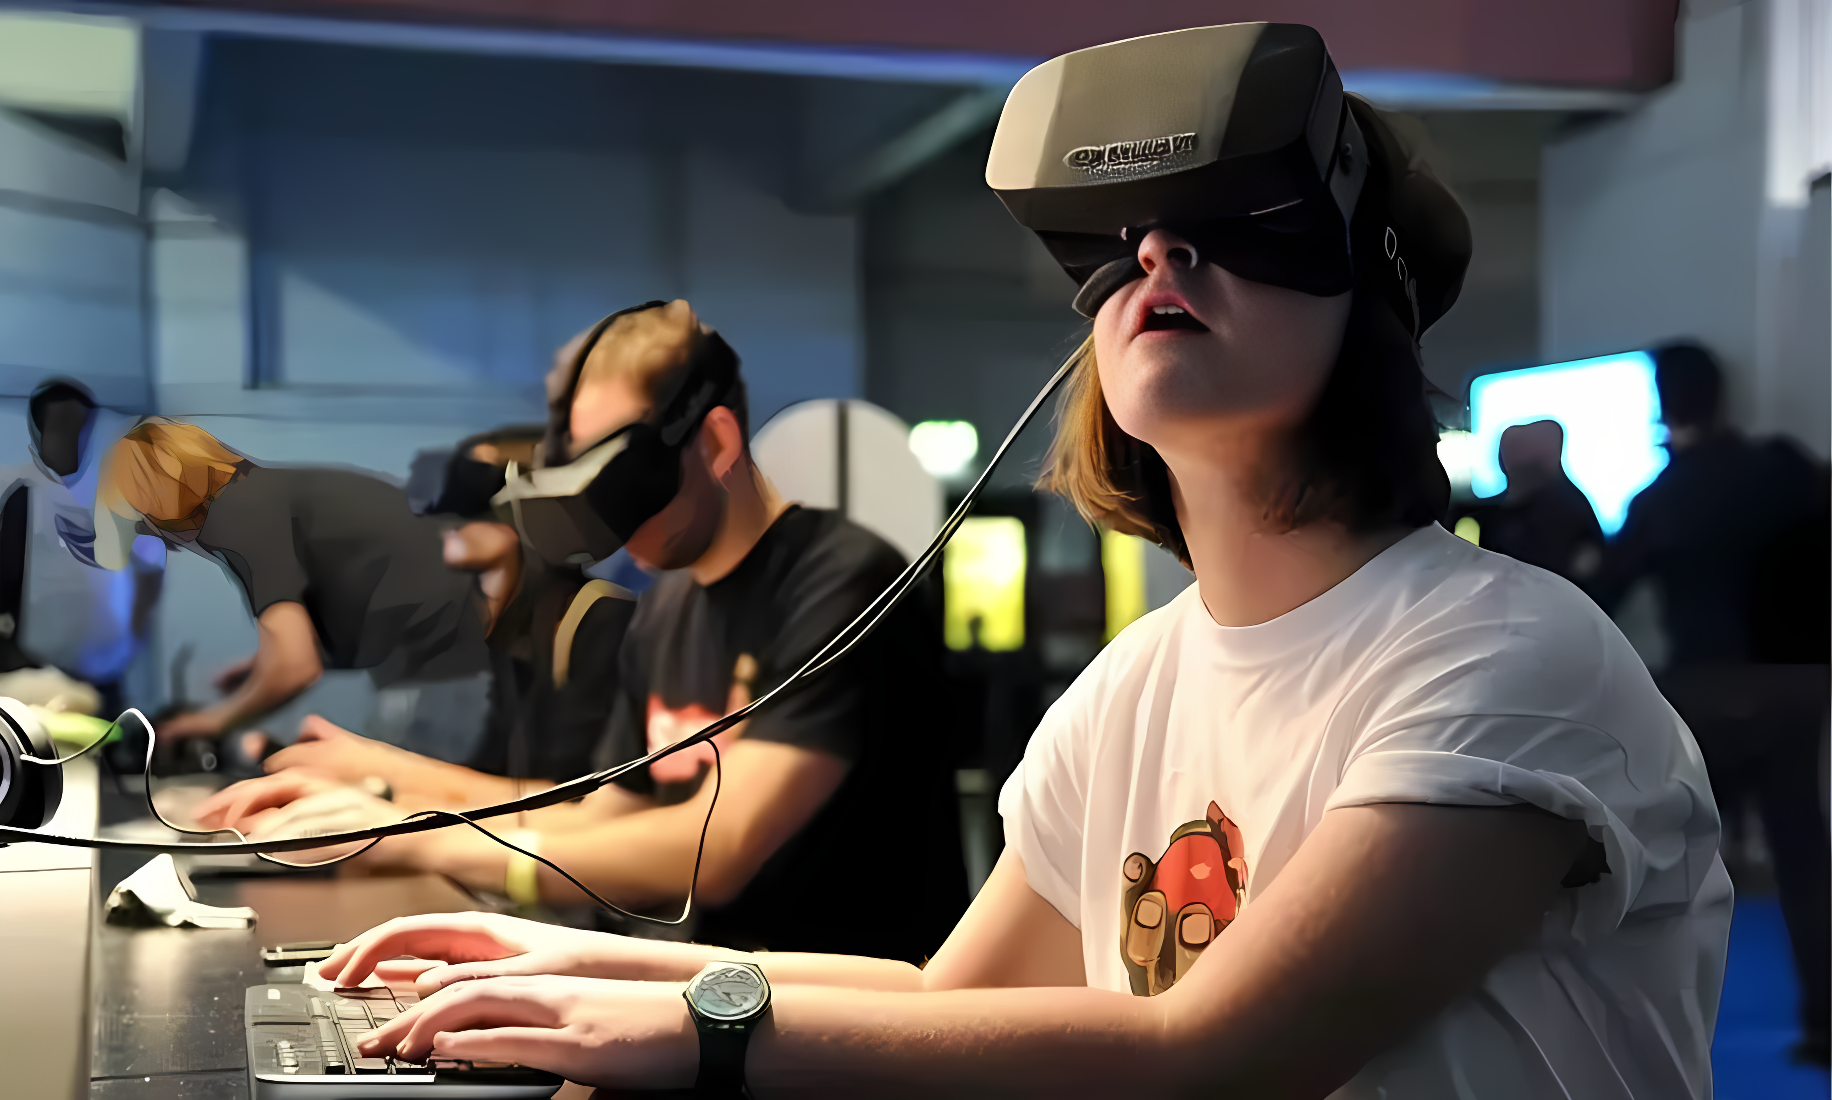 图片展示了几位戴着虚拟现实头盔的人正专注地体验VR设备，他们似乎正沉浸在虚拟世界的互动中。